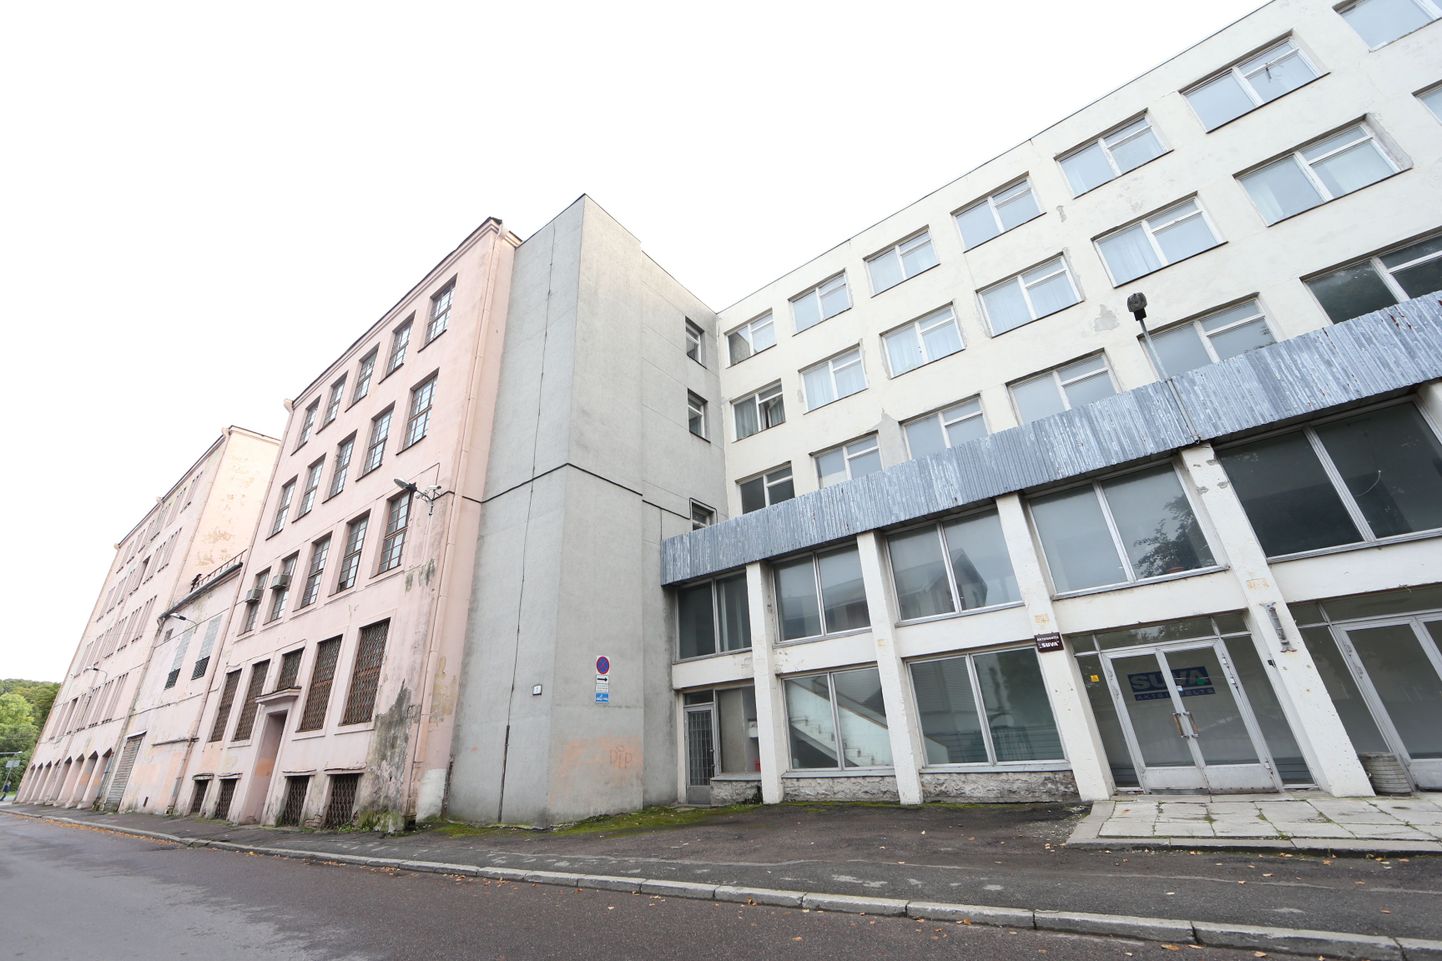 EKA uus hoone Tallinnas aadressil Kotzebue 1 /Põhja pst 7.